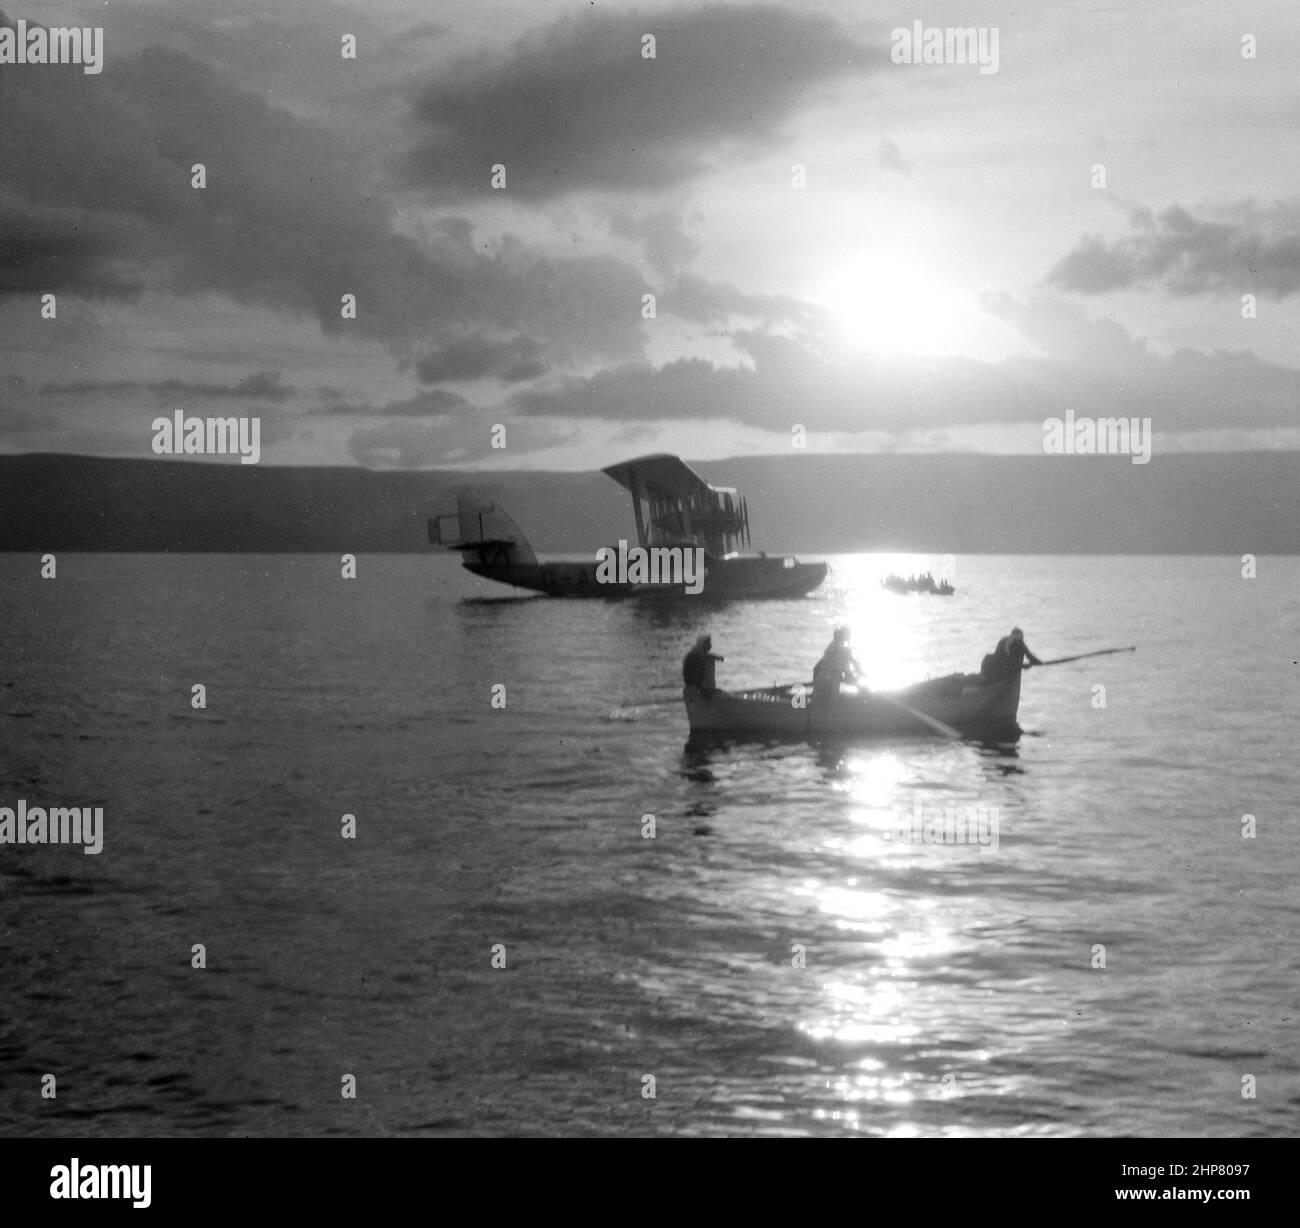 "Storia dell'Oriente del Migdino: Barca volante 'Satiro' sul Mare di Galilea ca. 1935 Località: Israele ca. 1935' Foto Stock